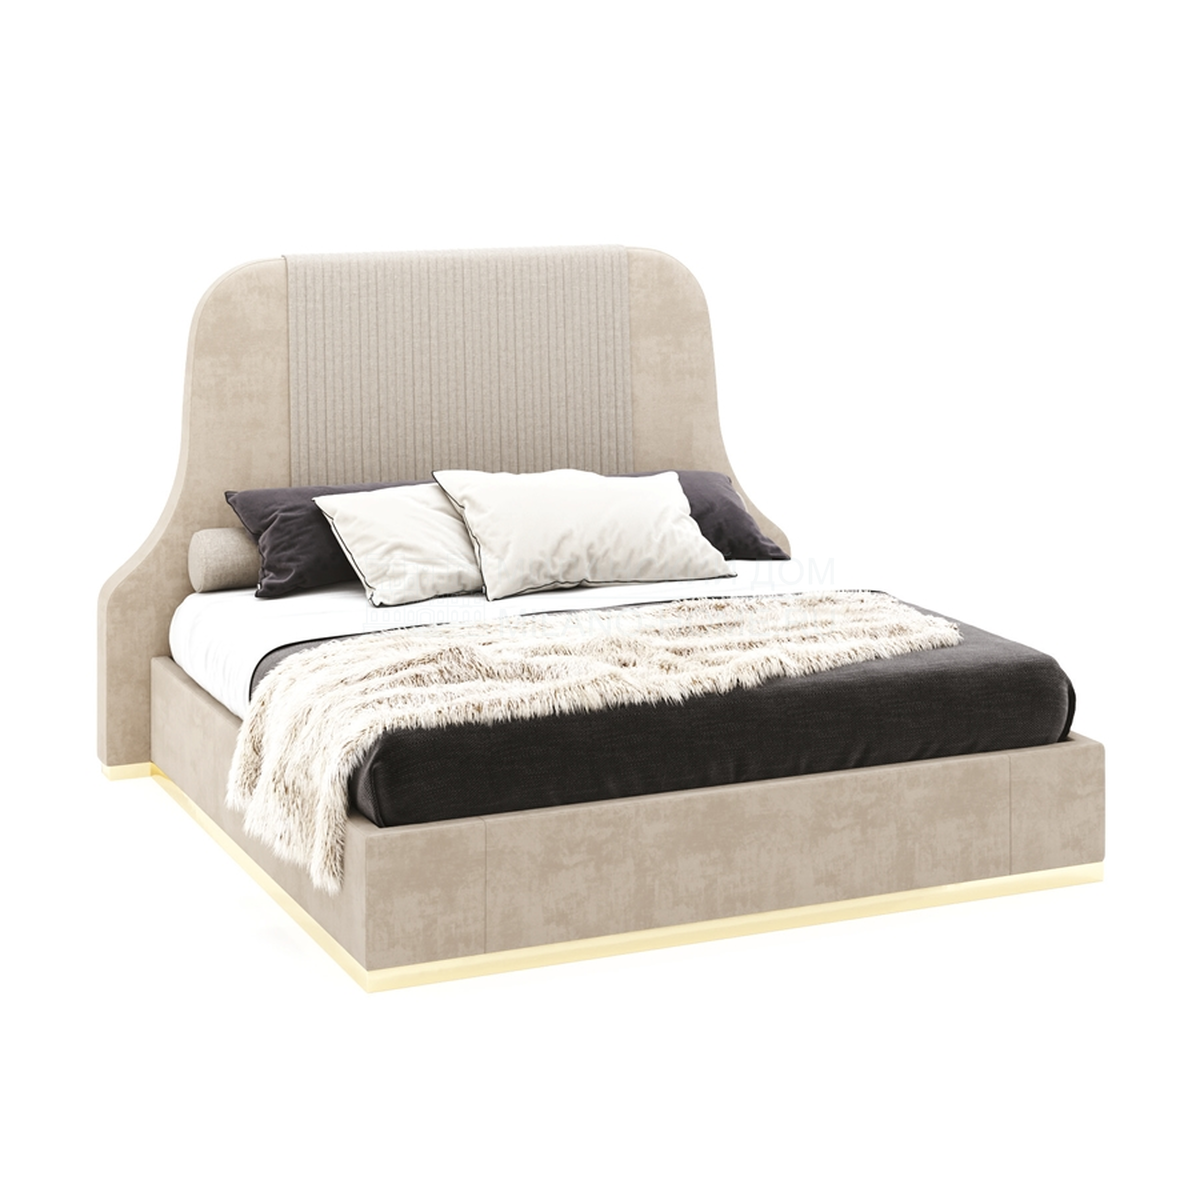 Двуспальная кровать Mecox bed из Италии фабрики ASNAGHI / INEDITO